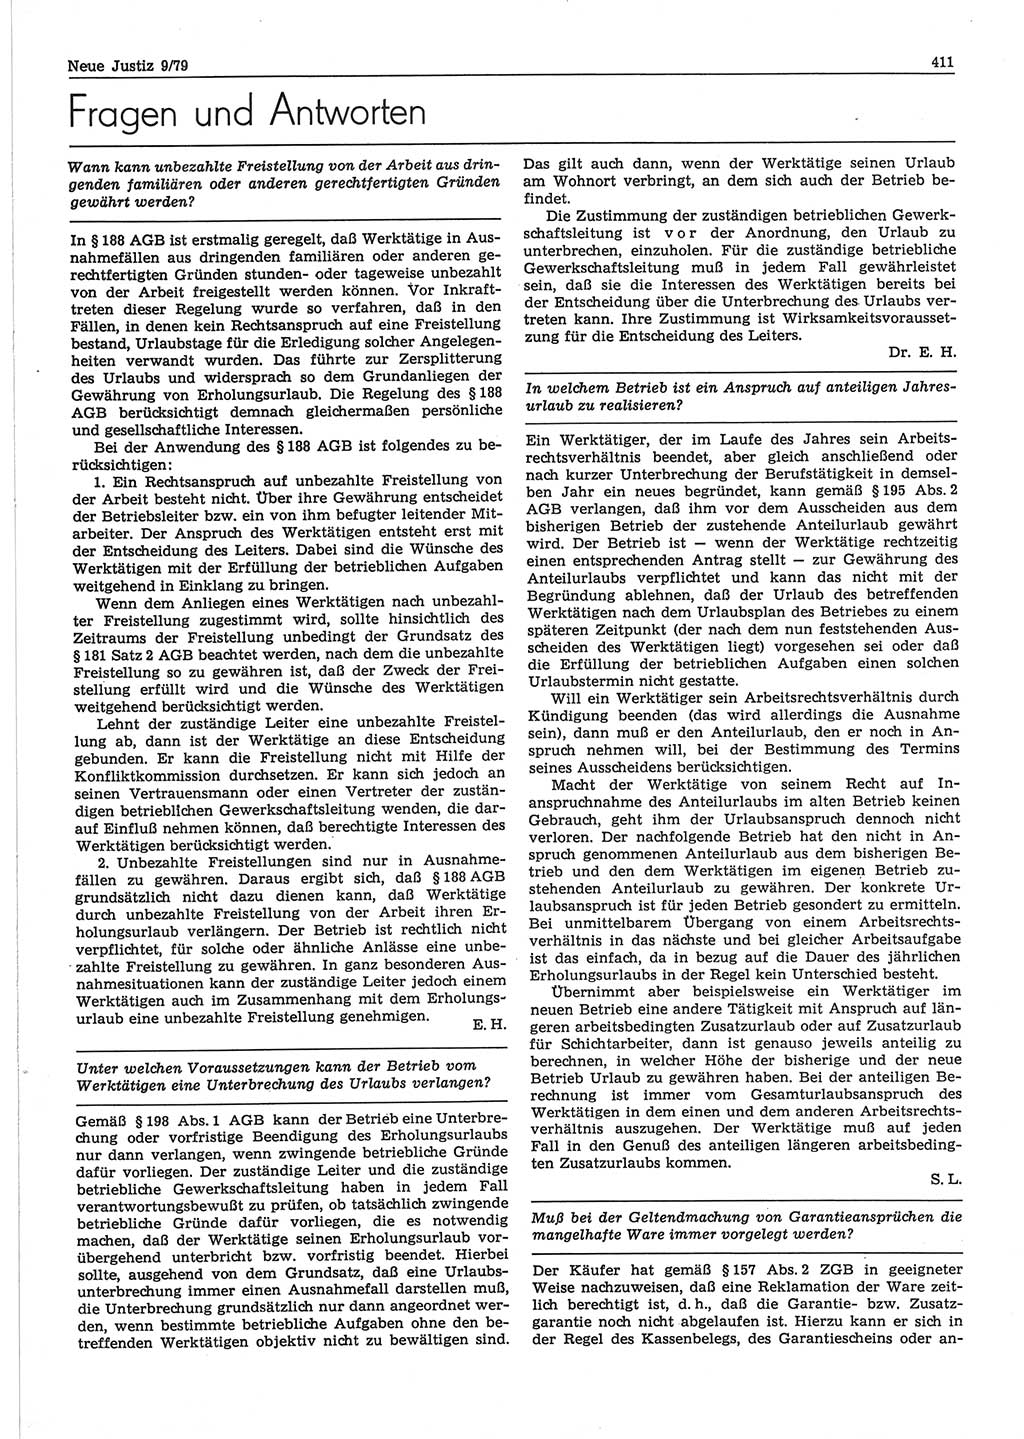 Neue Justiz (NJ), Zeitschrift für sozialistisches Recht und Gesetzlichkeit [Deutsche Demokratische Republik (DDR)], 33. Jahrgang 1979, Seite 411 (NJ DDR 1979, S. 411)